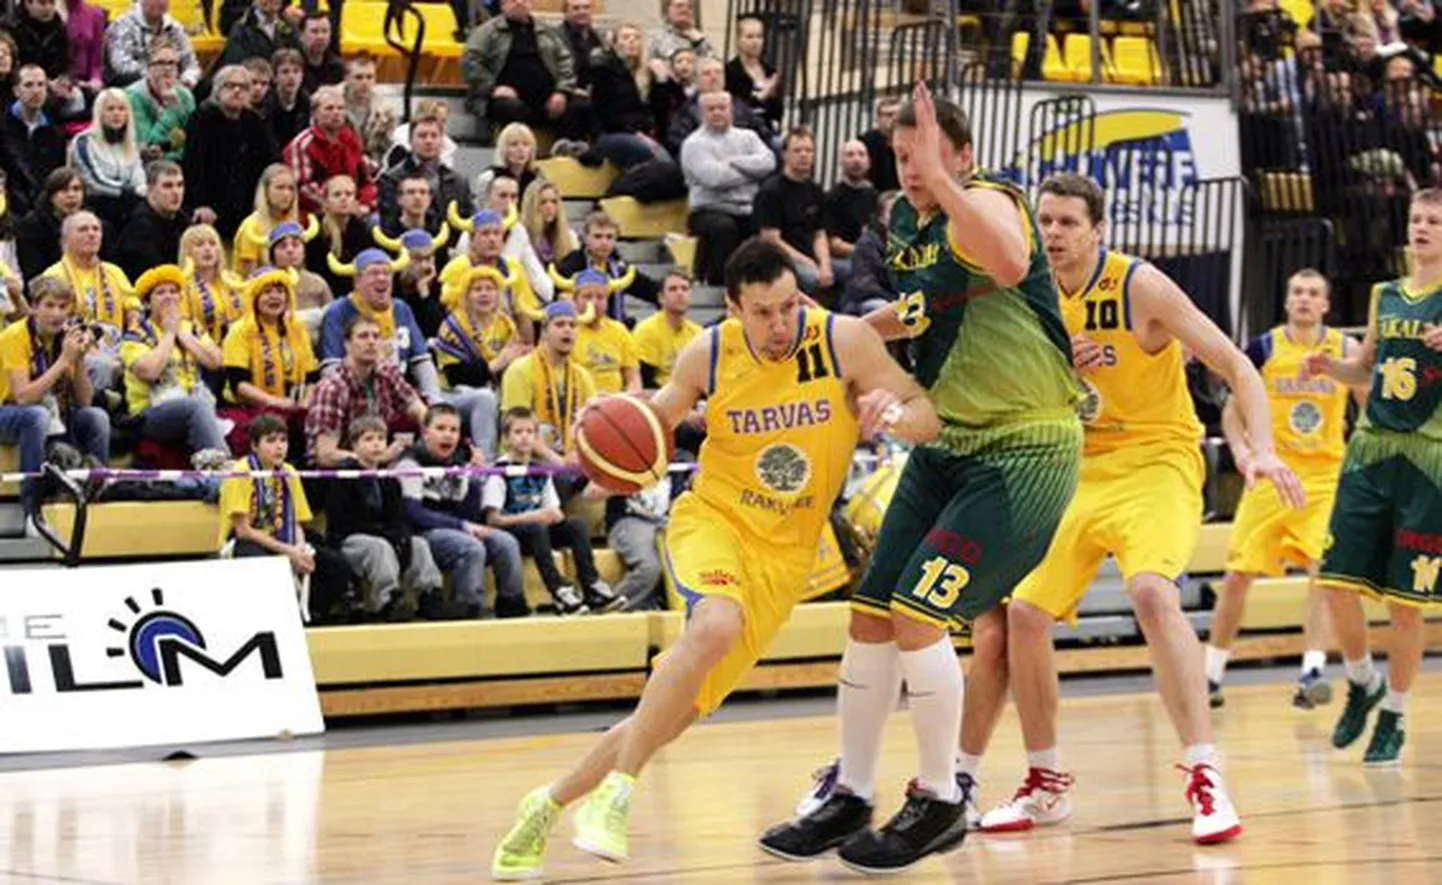 Juris Umbraško (palliga) oli reedel kodupubliku toetusel Vilniuse Saka­lai vastu mängides 33 punktiga Tarva säravaim mängumees.